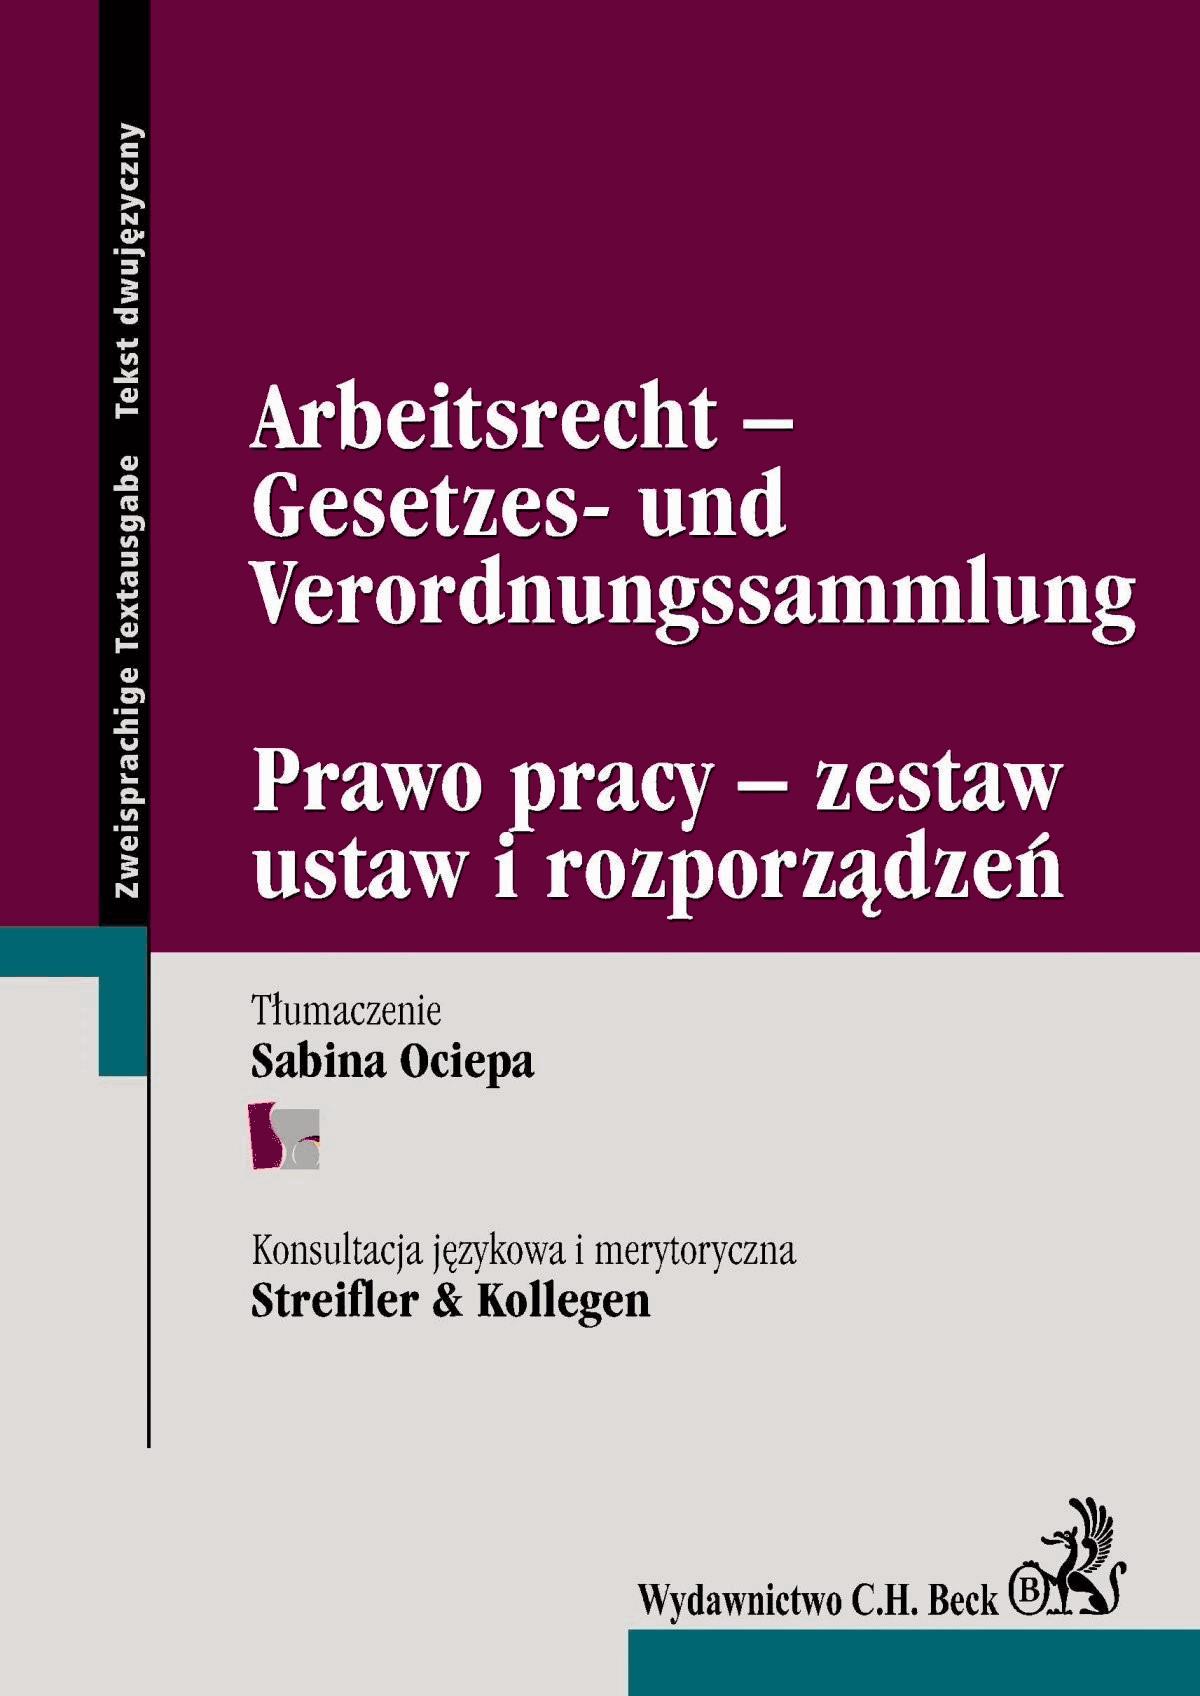 Okładka:Arbeitsrecht -Gesetzes- und Verordnungssammlung Prawo pracy - zestaw ustaw i rozporządzeń 